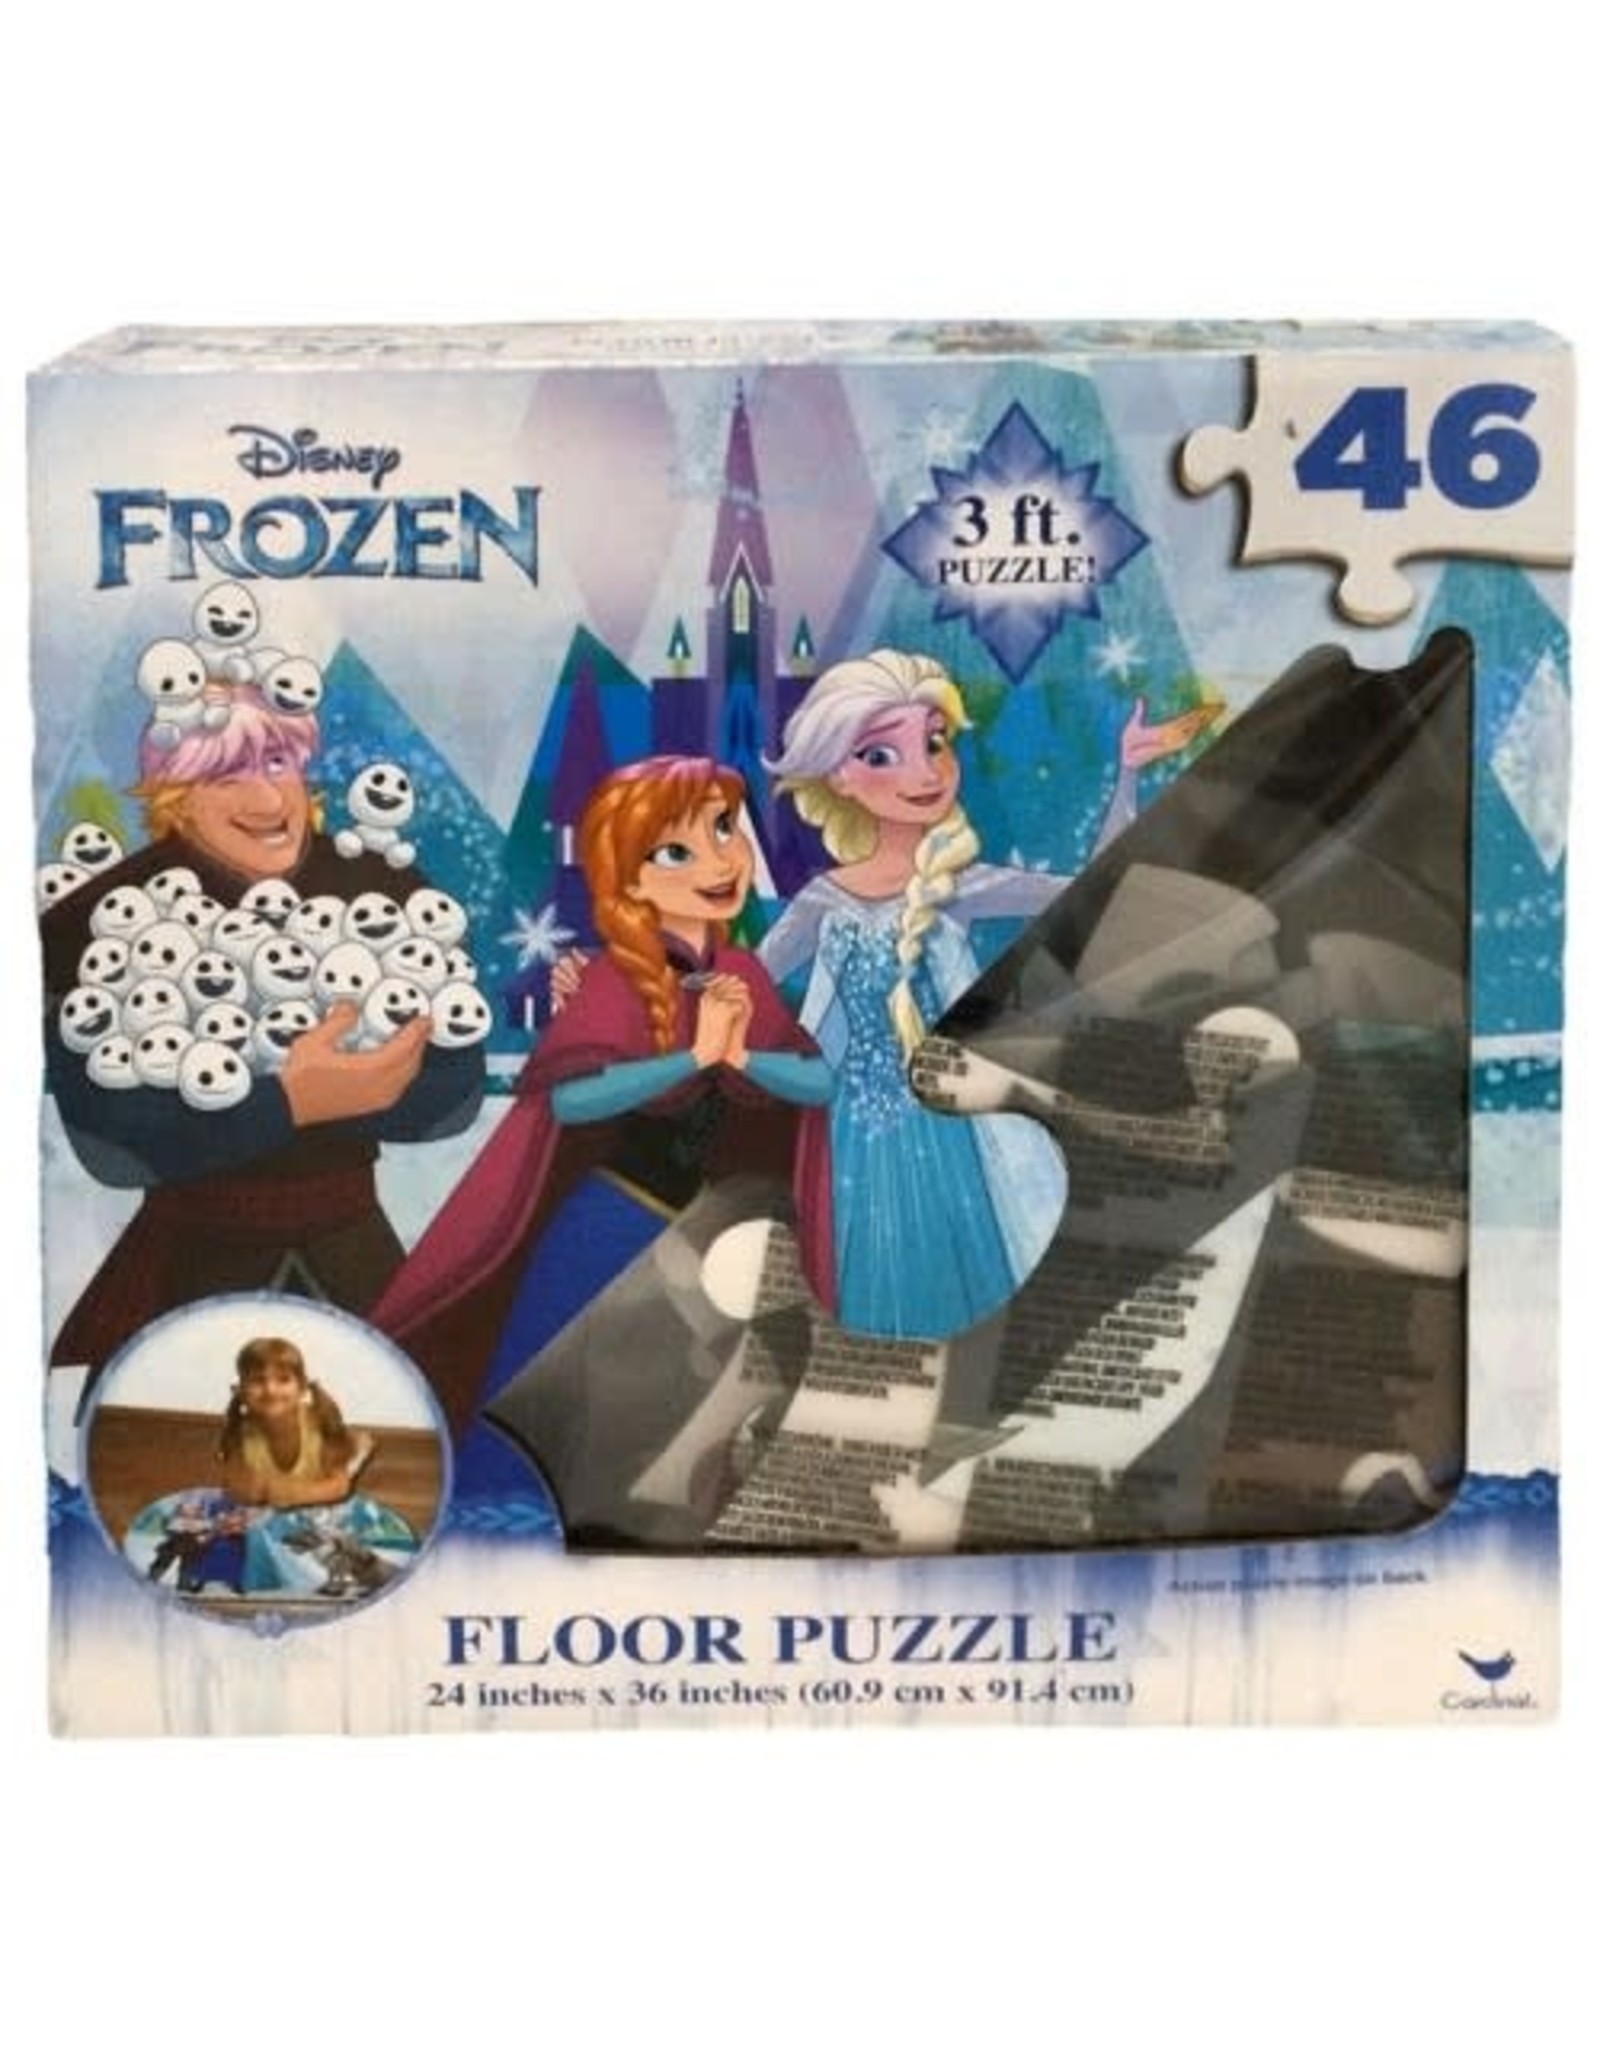 Cardinal Frozen - 46P floor puzzle